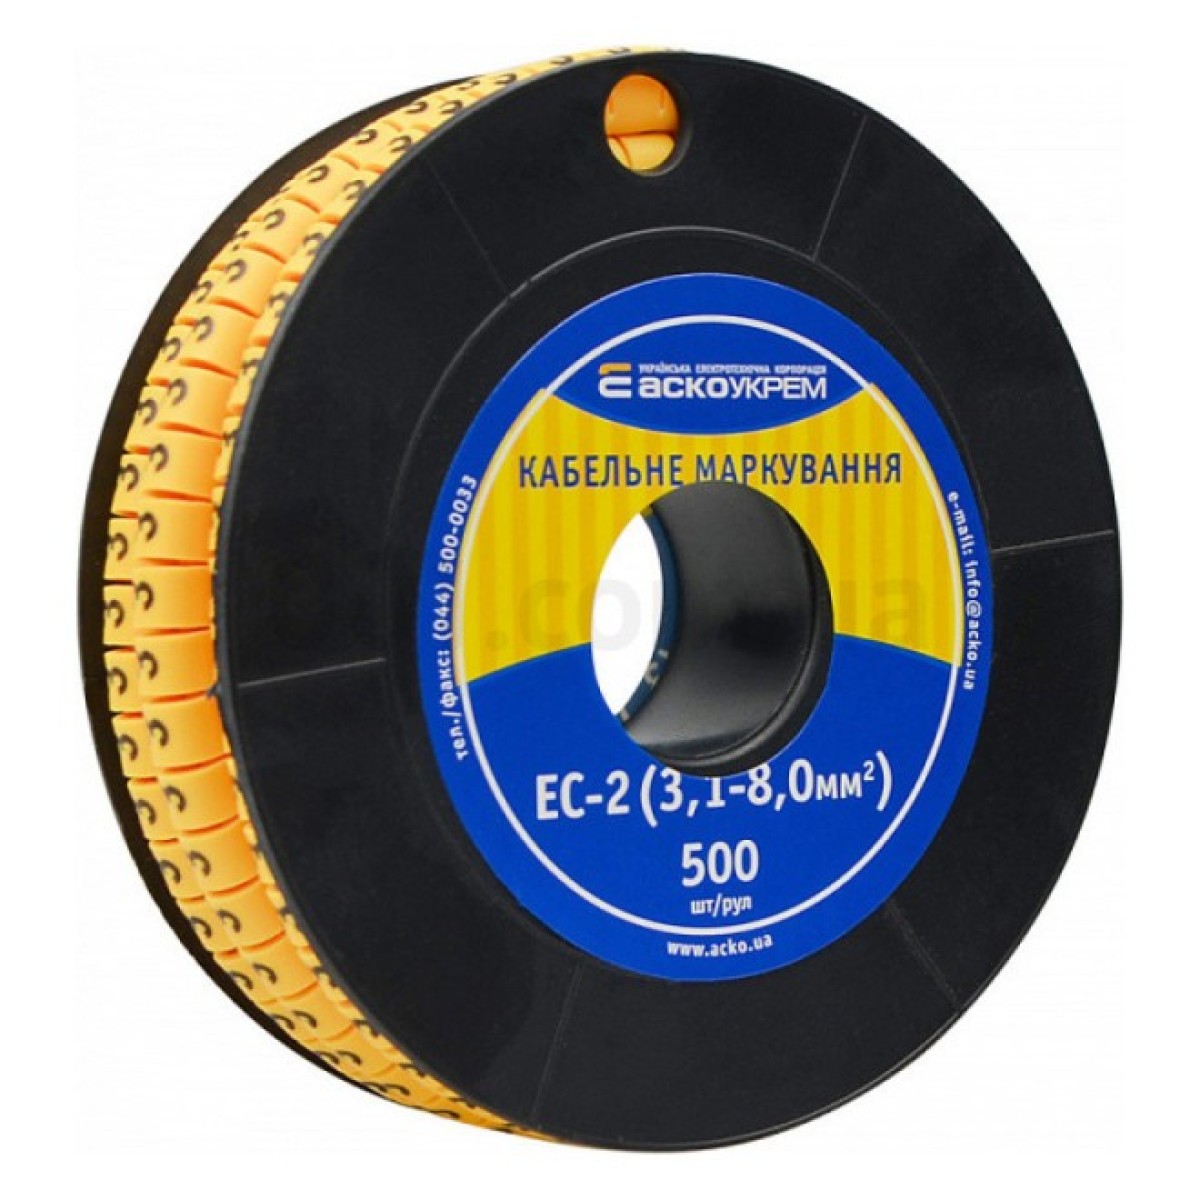 Маркування ЕС-2 для кабелю 3,1-8,0 мм² символ «3» (рулон 500 шт.), АСКО-УКРЕМ 256_256.jpg